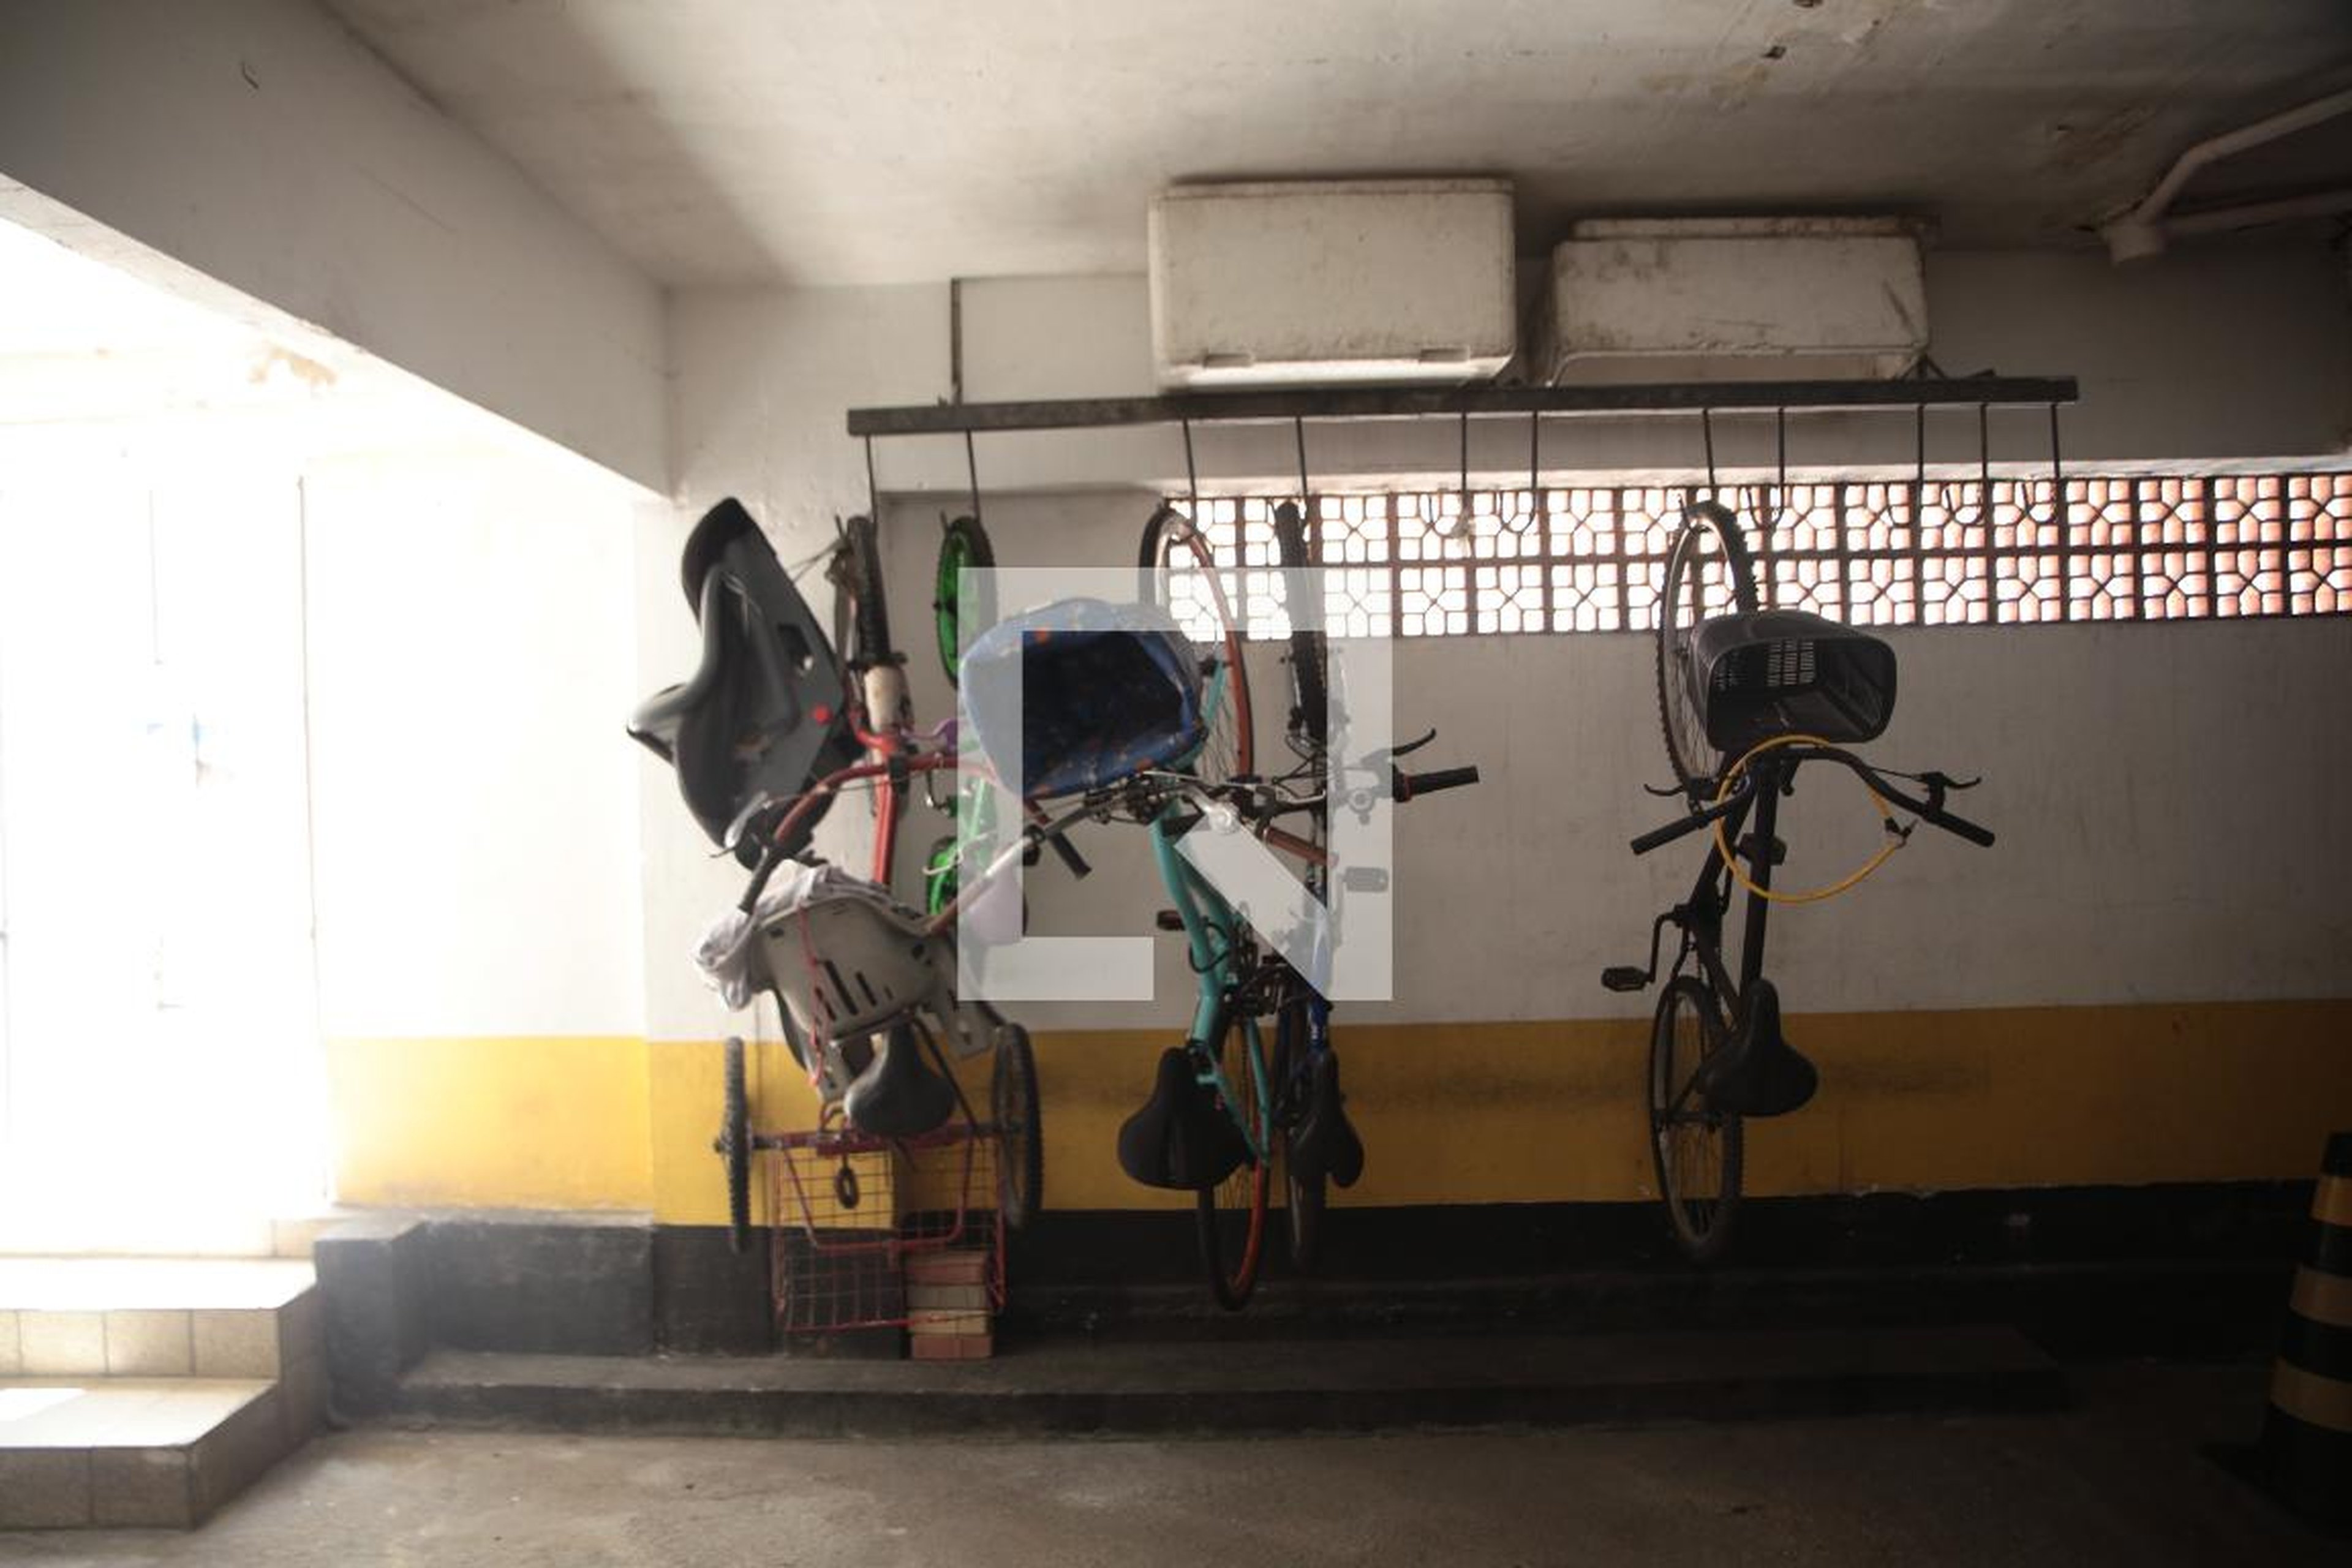 Bicicletario - Edifício Residencial Jatiuca